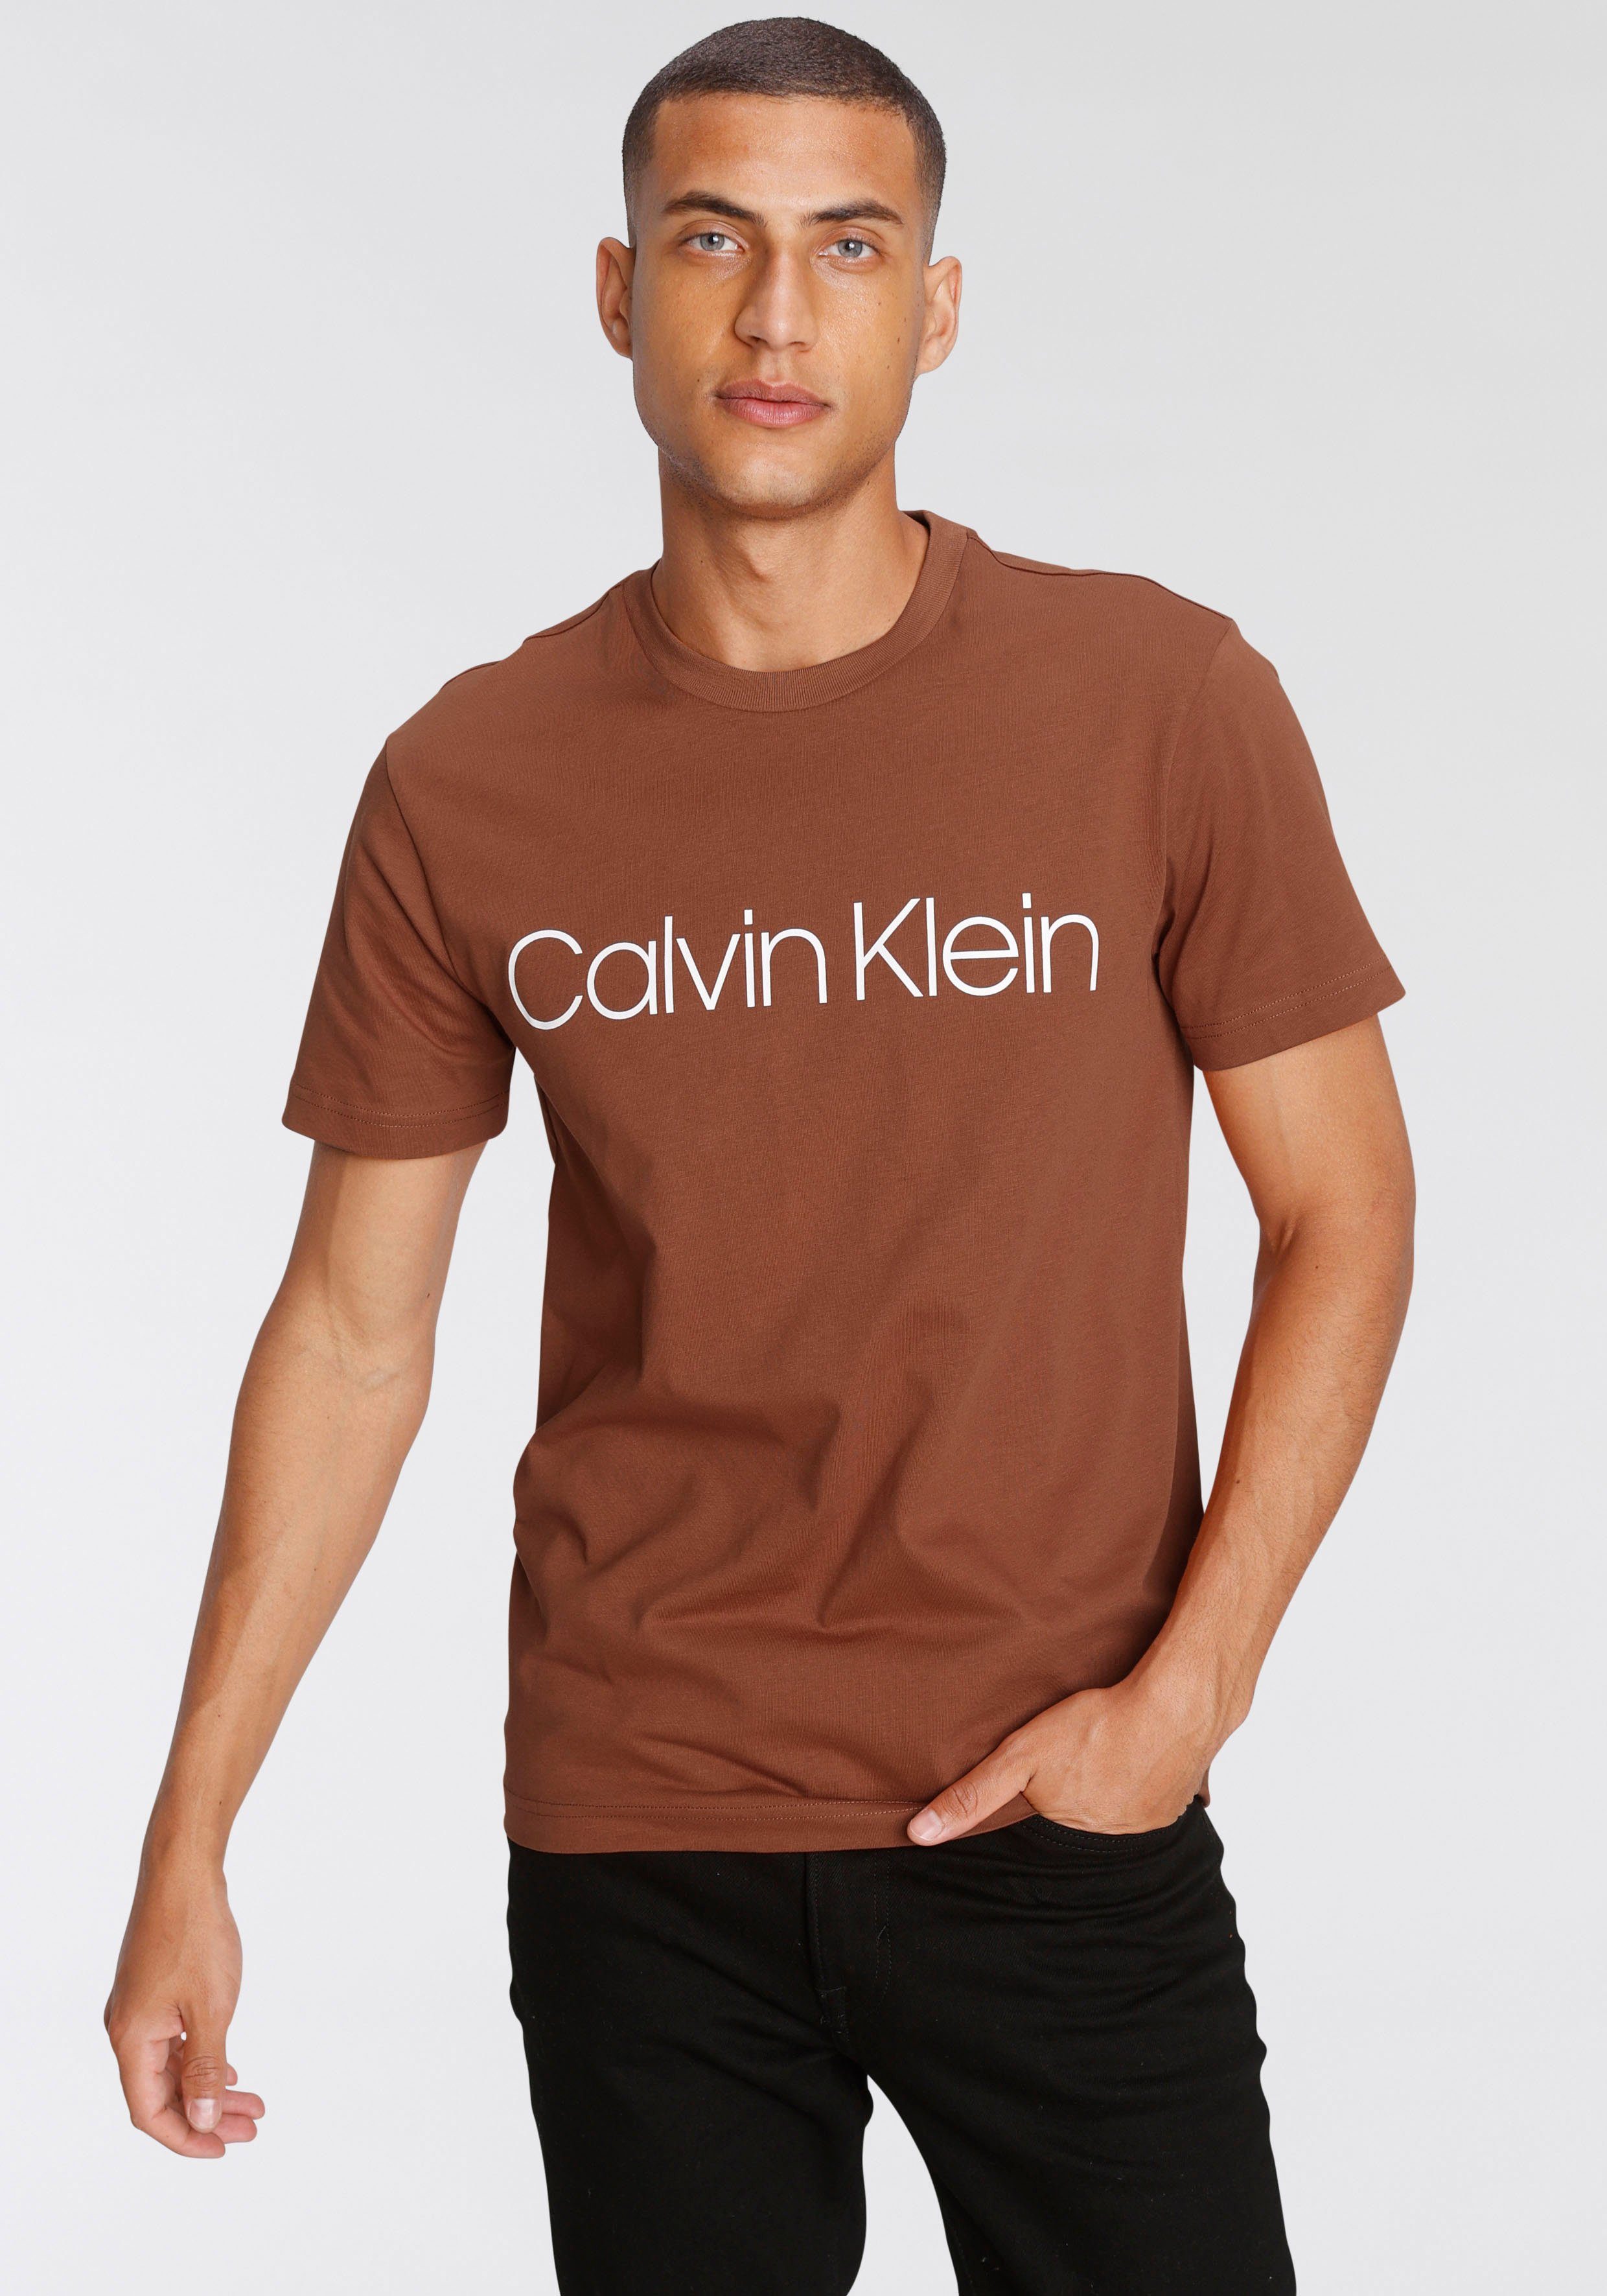 Calvin Klein Herrenmode & Herrenbekleidung online kaufen | OTTO